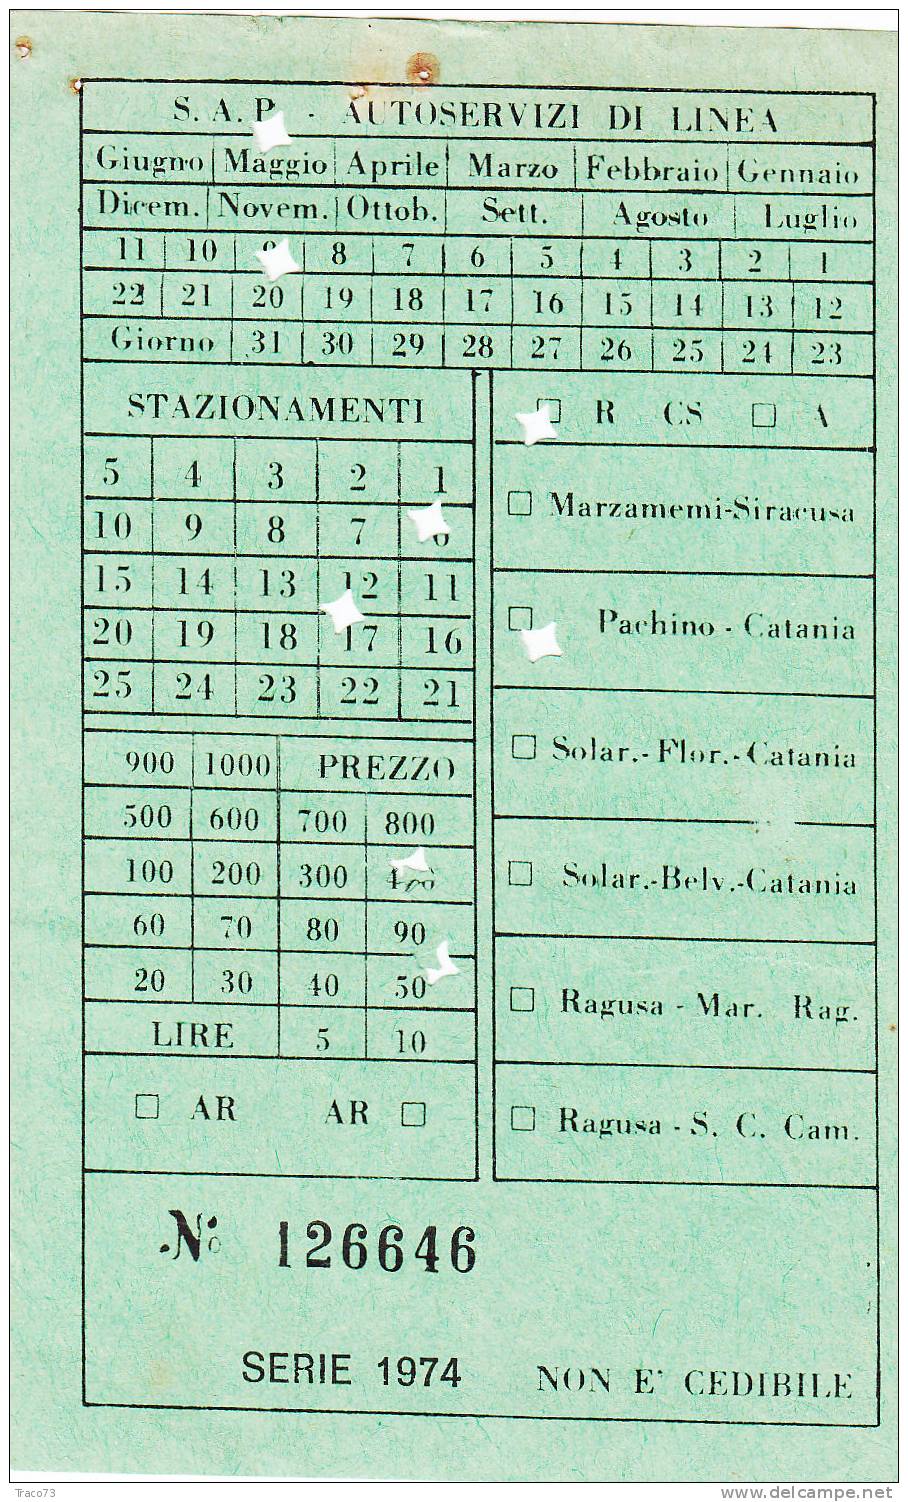 Pachino / Catania  -  Società S.A.P.  - Autoservizi Di Linea  - Biglietto Abbonamento - Anno 1974 - Europe